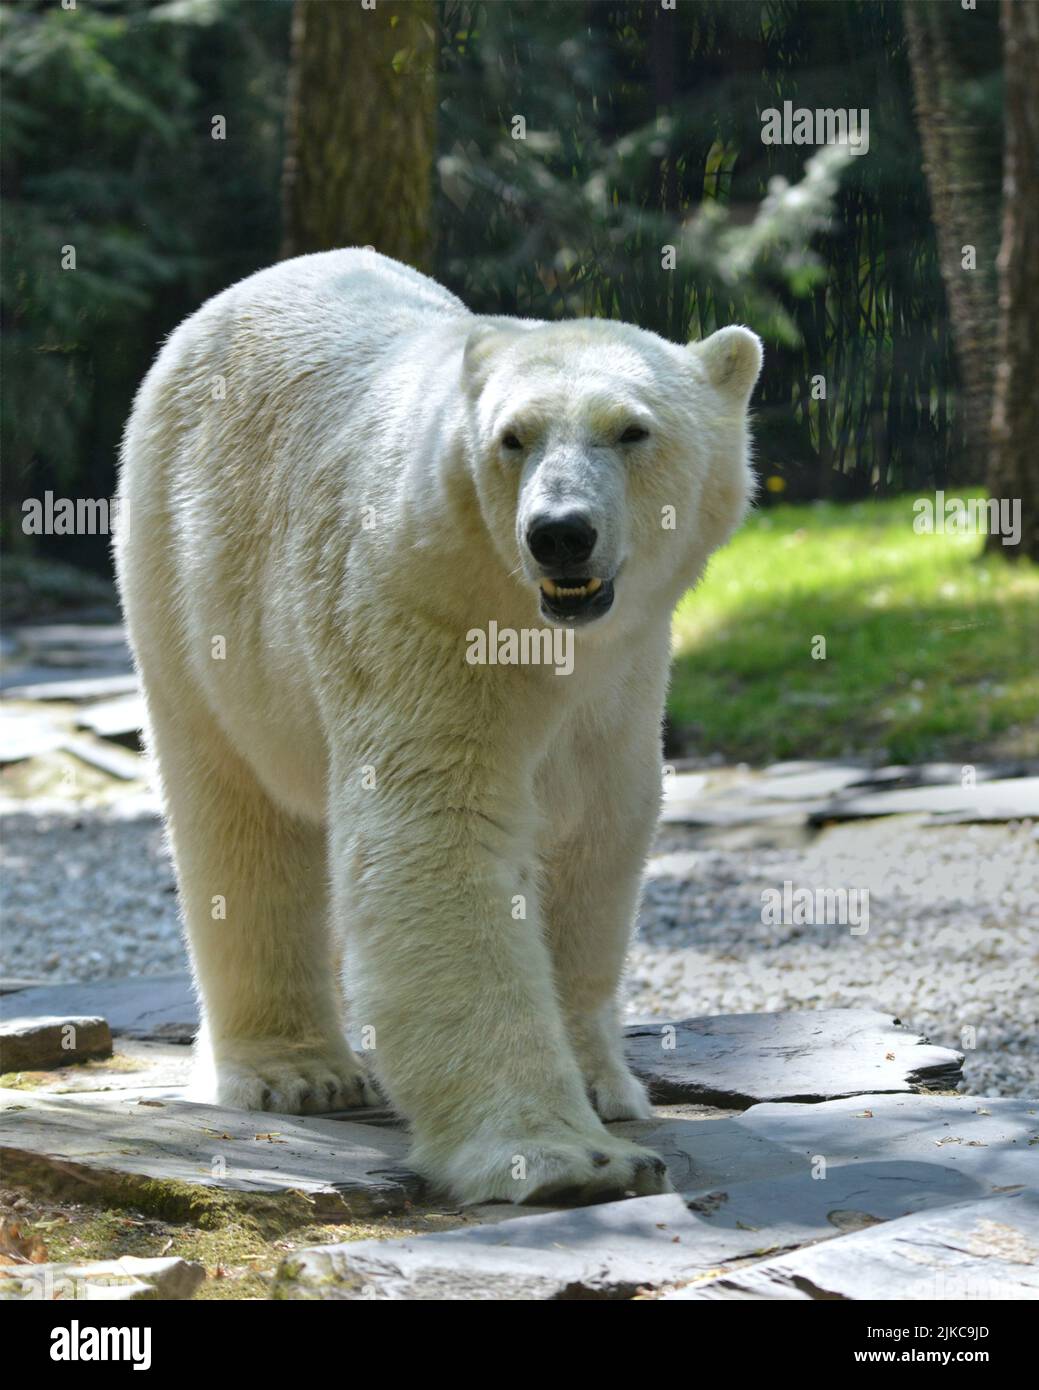 Oso polar de primer plano (Ursus maritimus) caminando sobre piedras y visto de frente Foto de stock